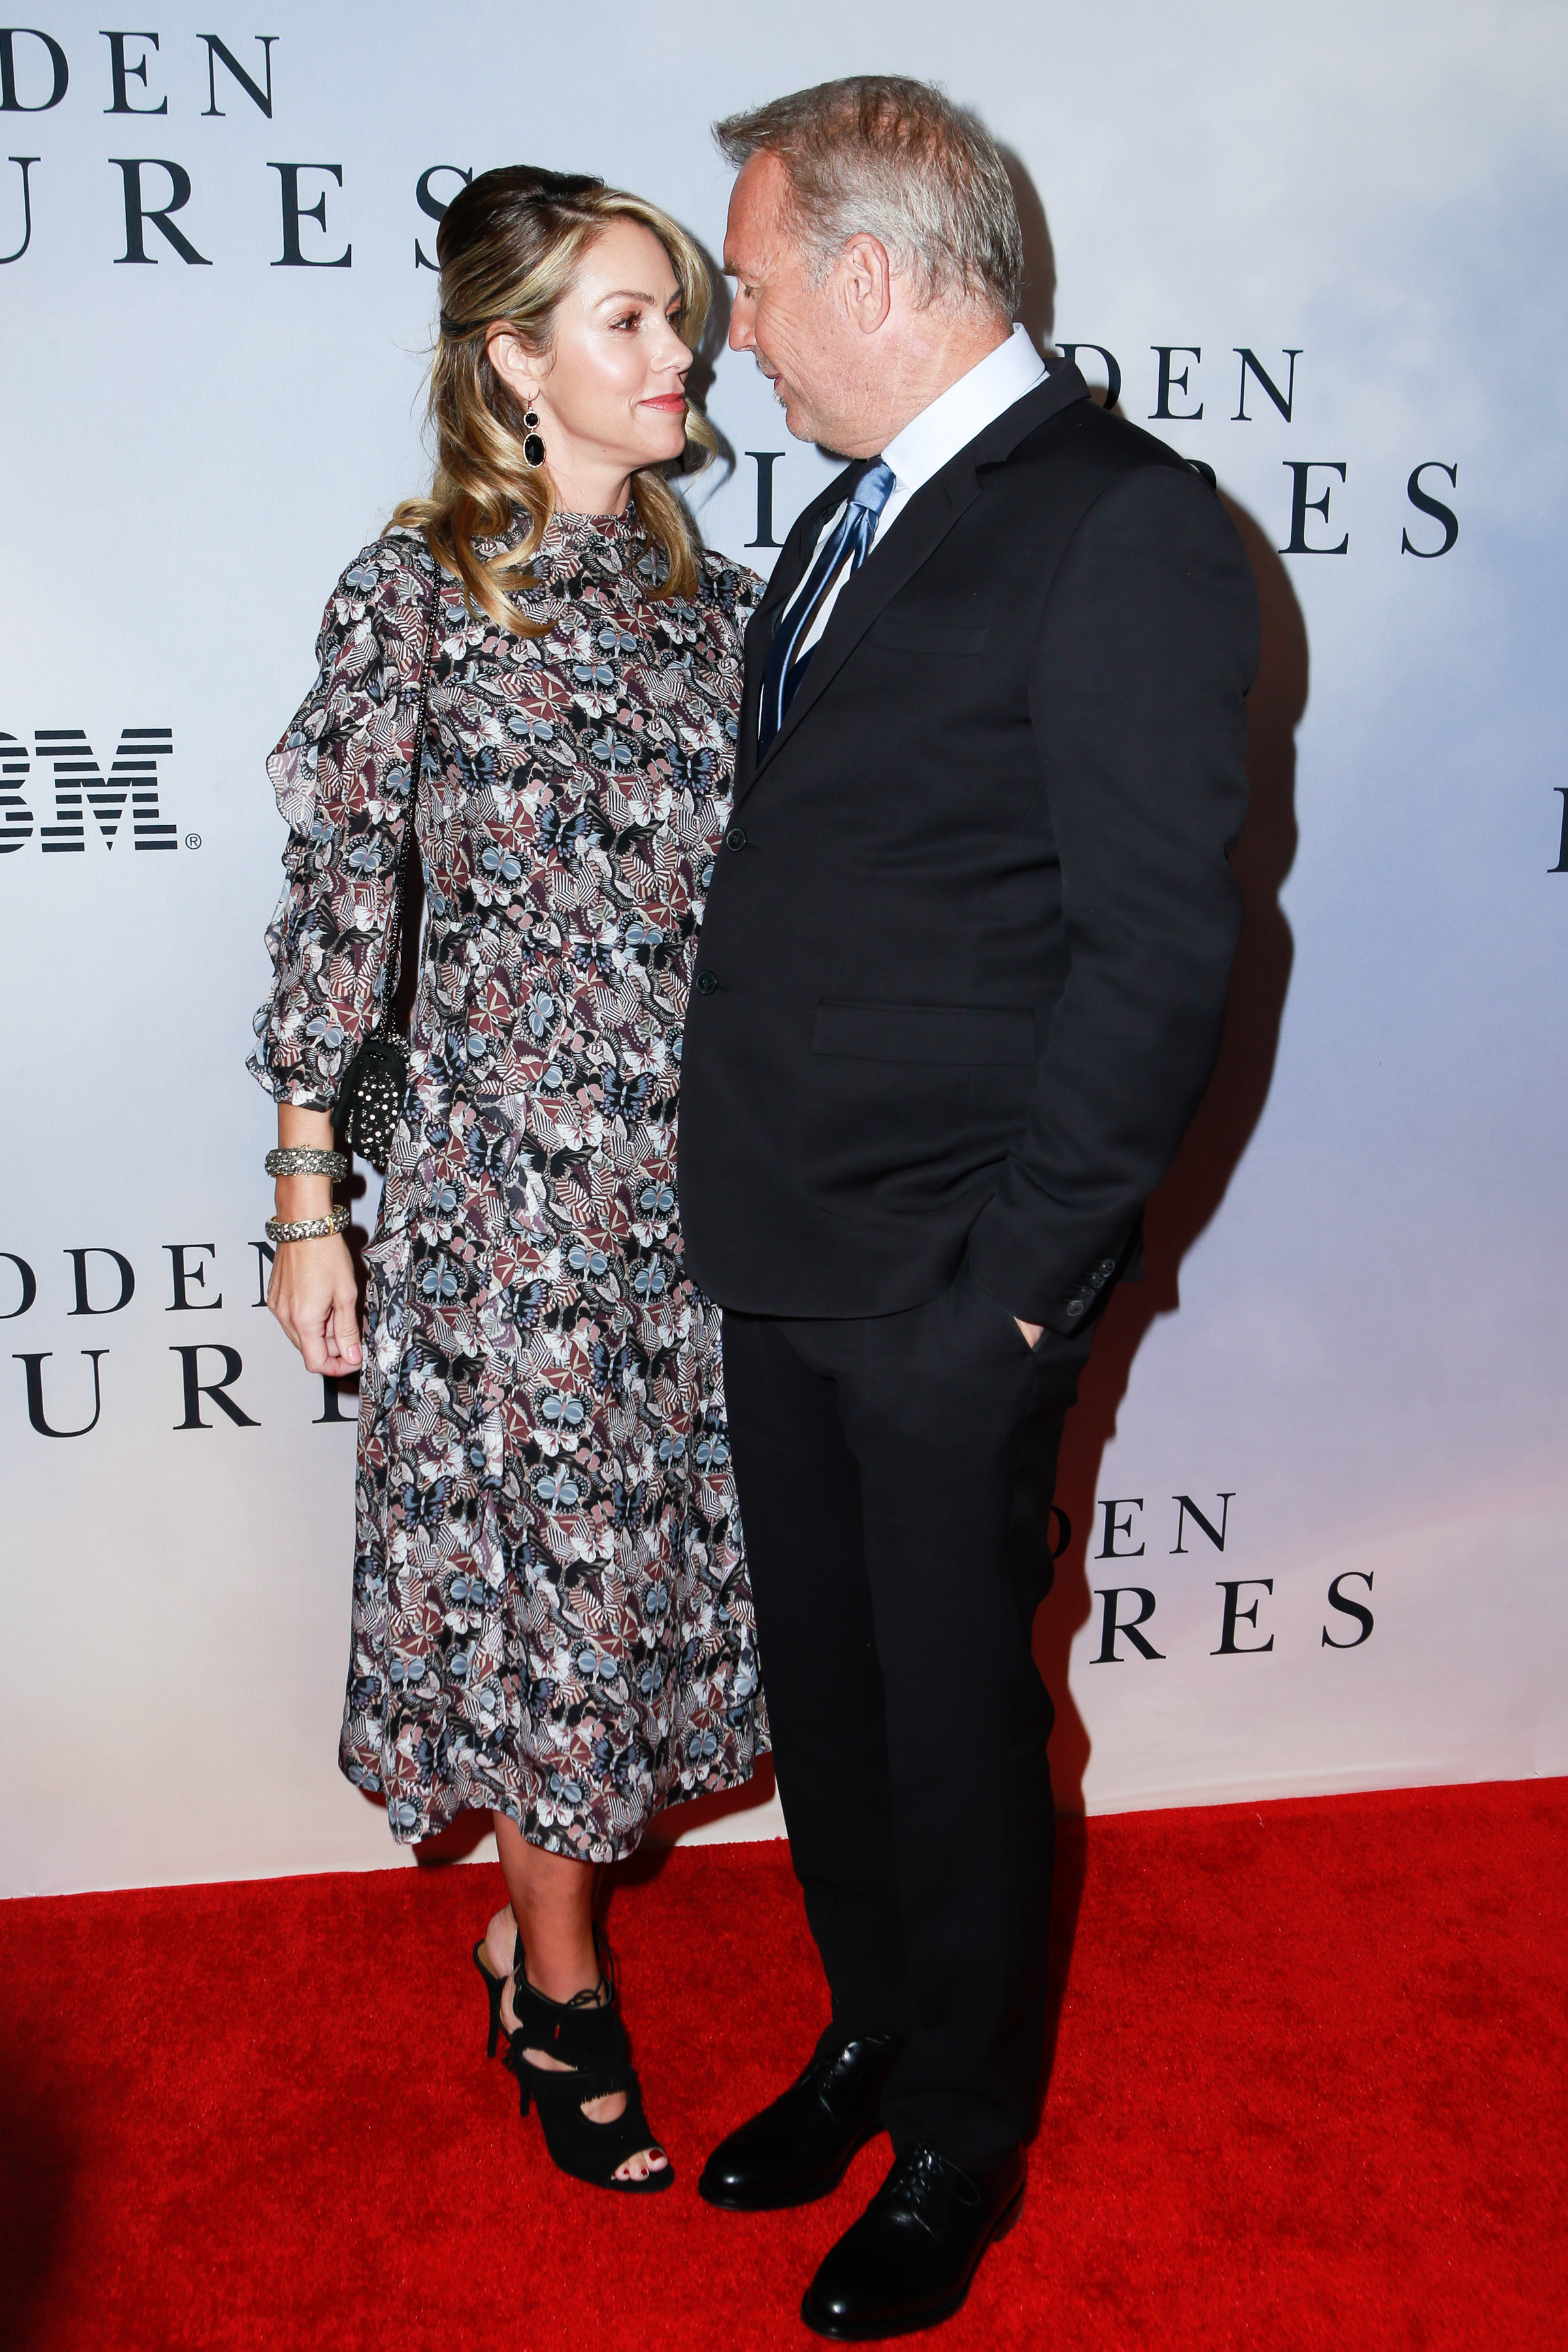 Christine Baumgartner und Kevin Costner bei der Sondervorführung von "Hidden Figures" in New York City, 2016 | Quelle: Getty Images